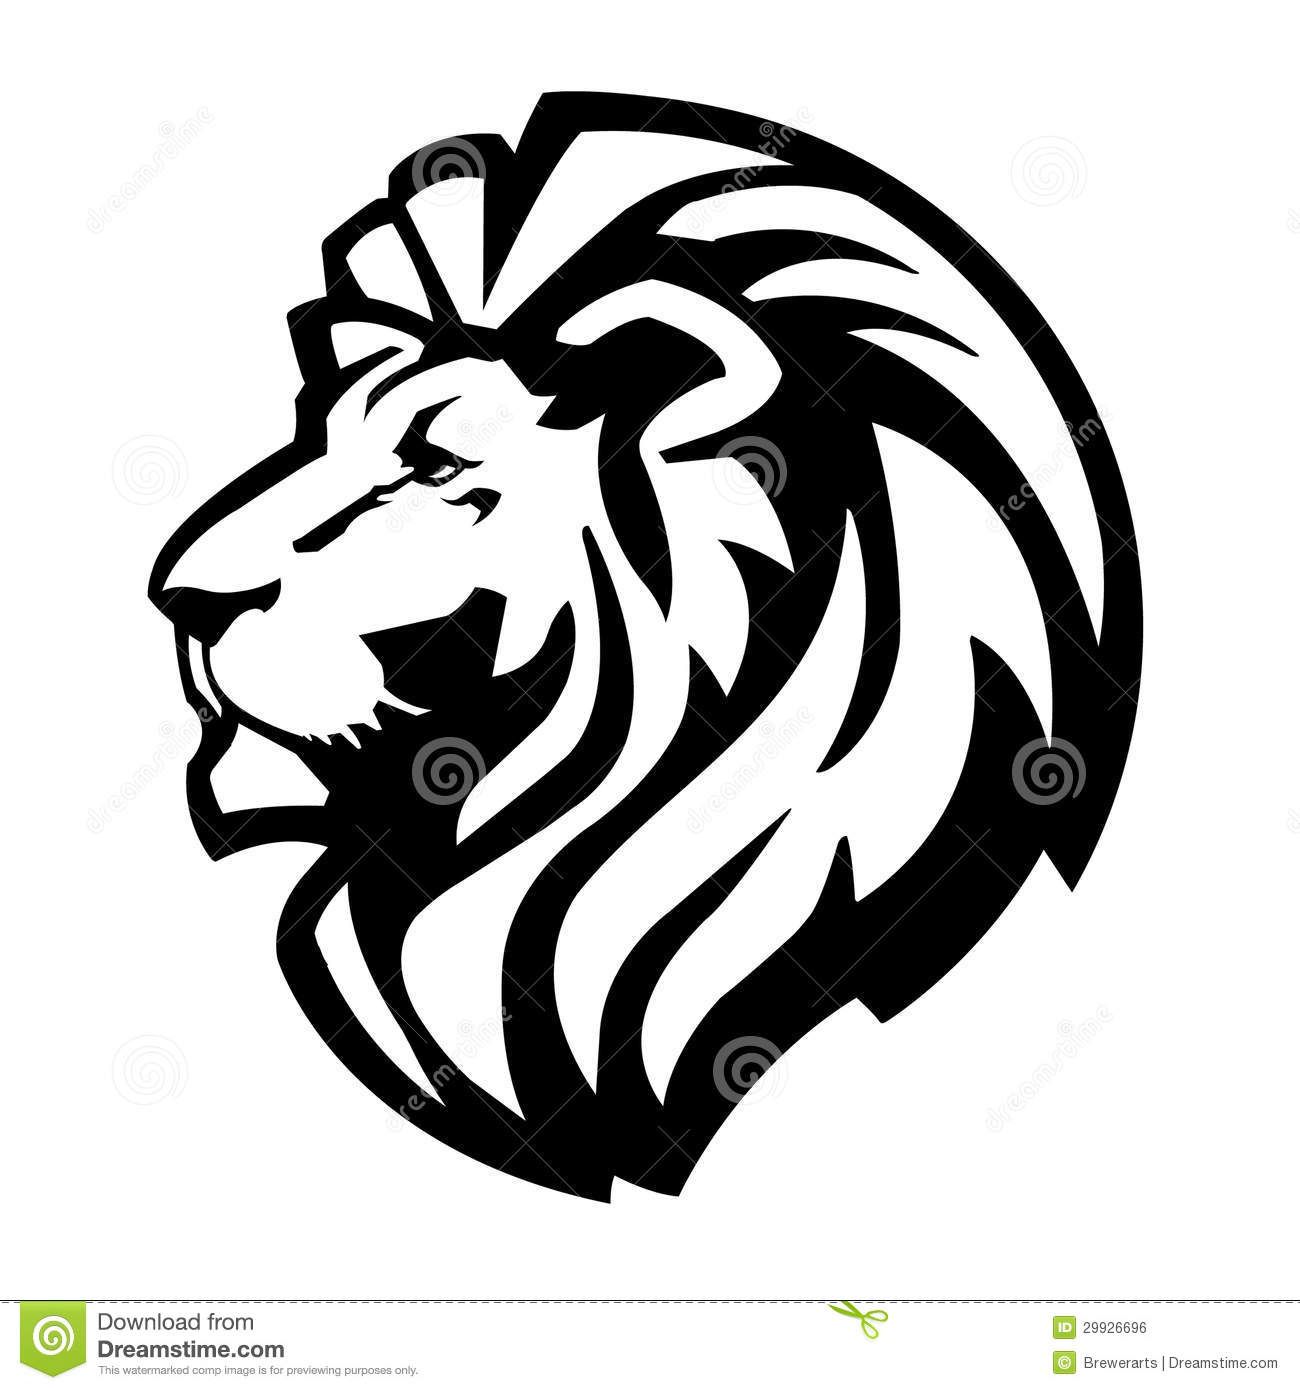 Black and white lion of judah clip art